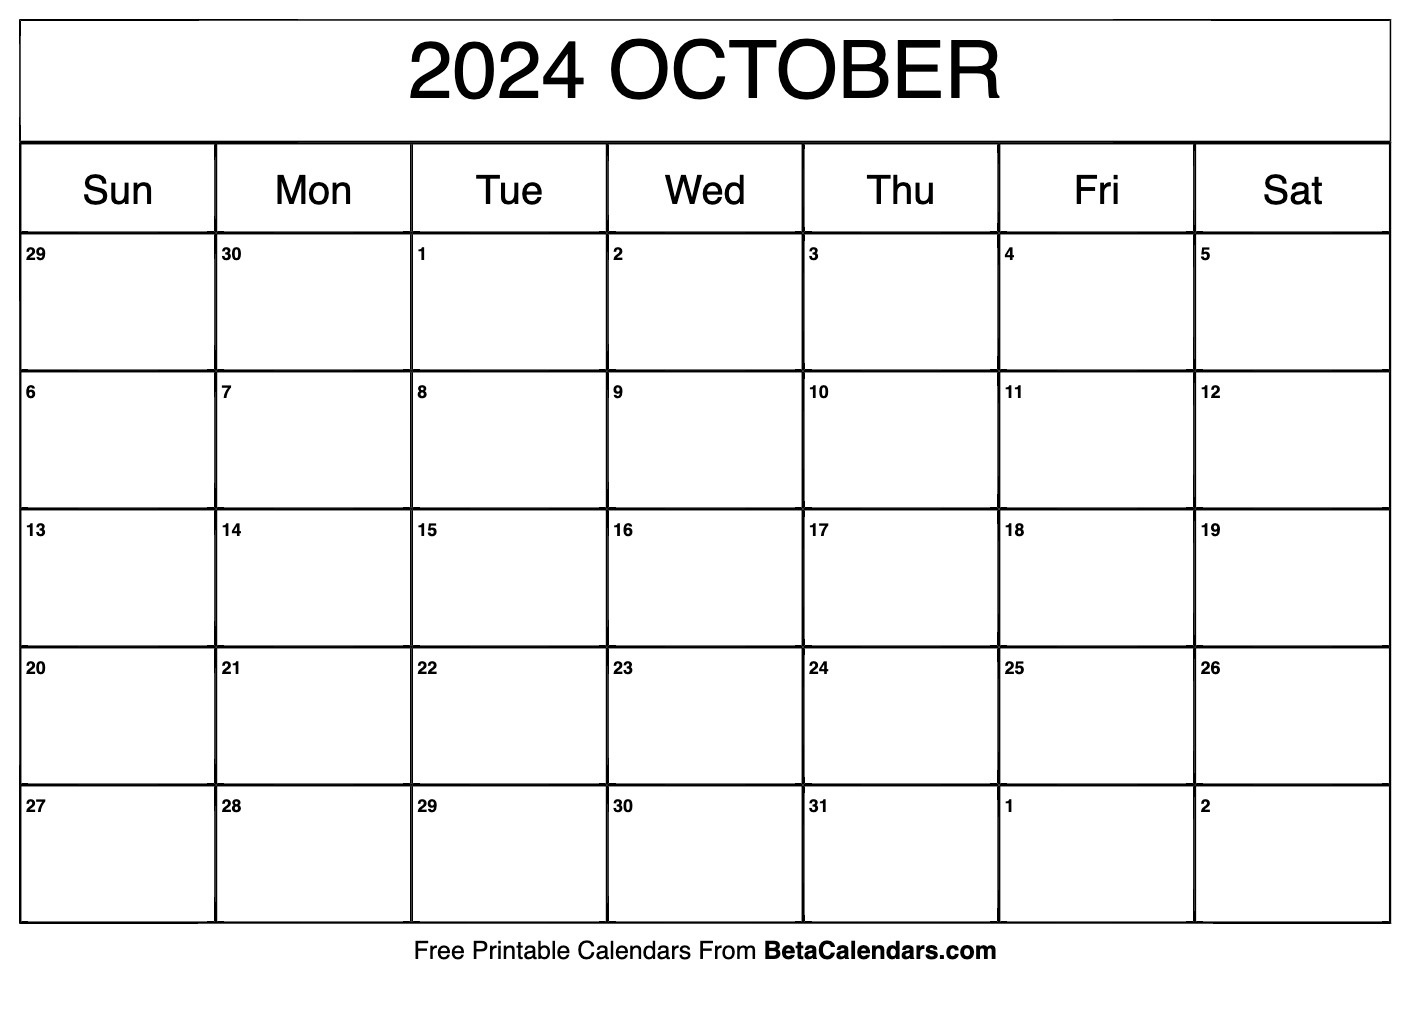 Free Printable October 2024 Calendar | Printable Calendar 2024 October